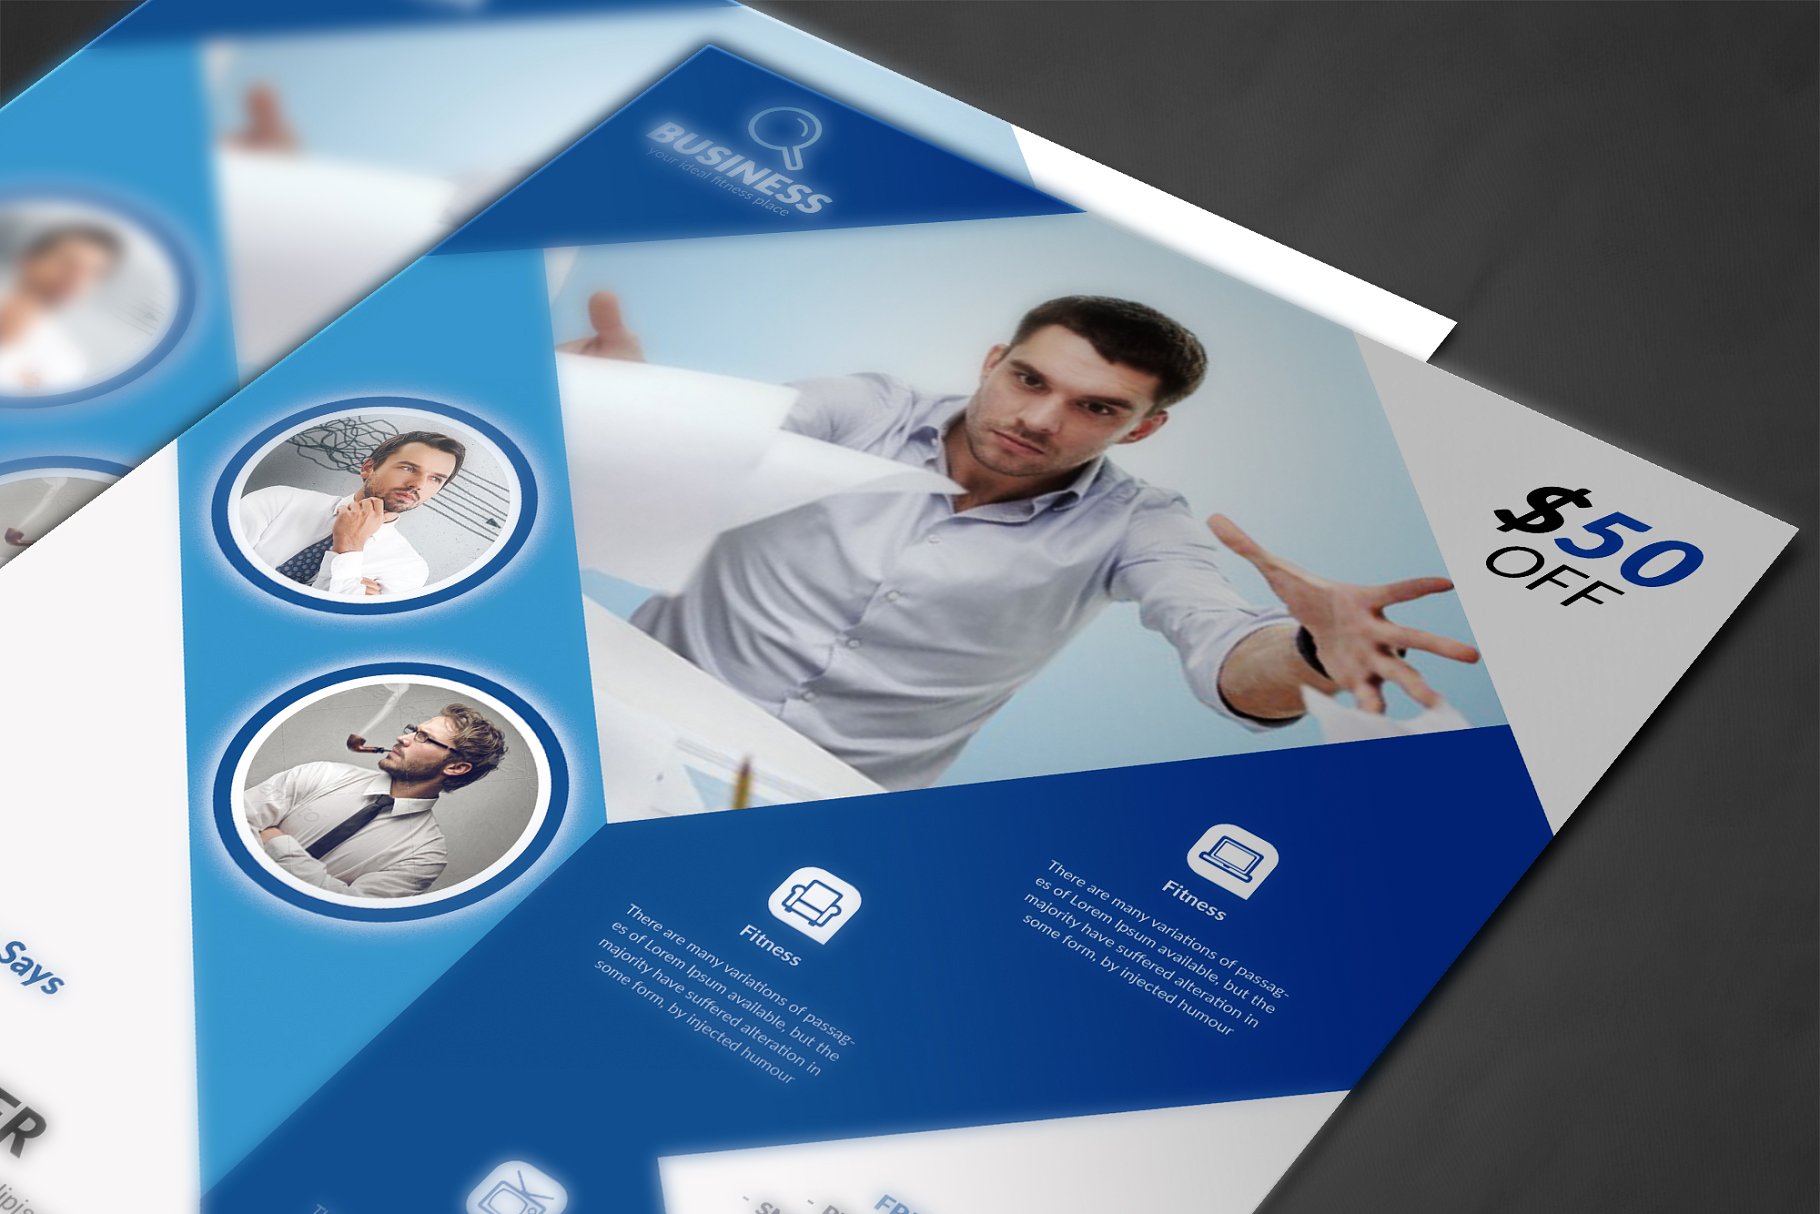 培训机构商务合作宣传传单设计模板 Corporate Flyer Print Templates插图(3)